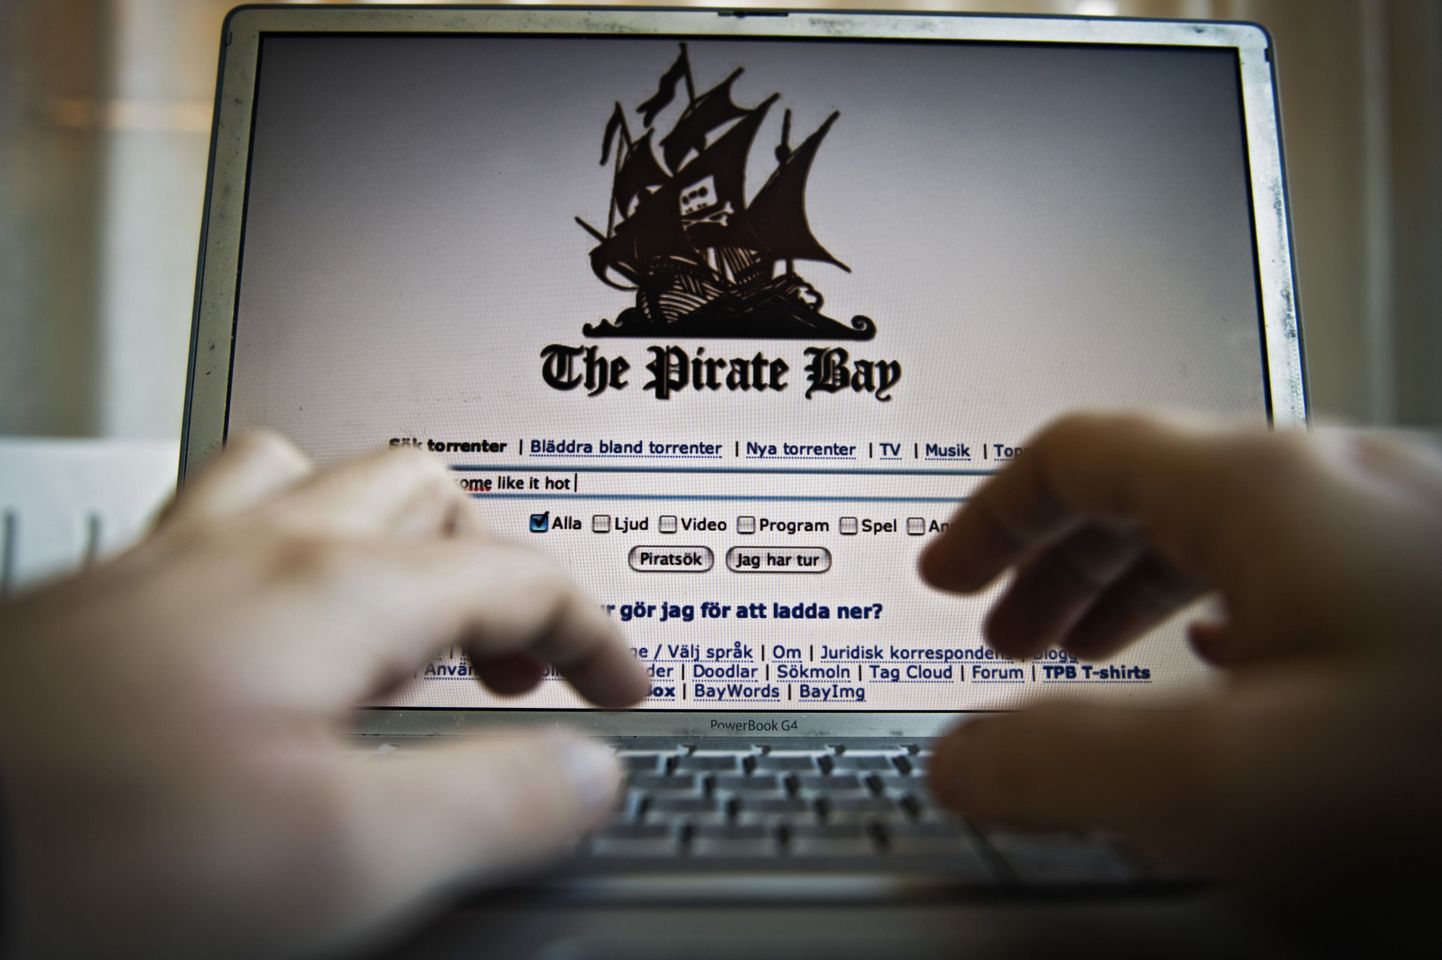 Дело Pirate Bay столкнуло в суде интересы сторонников свободного распространения информации в Сети и правообладателей.